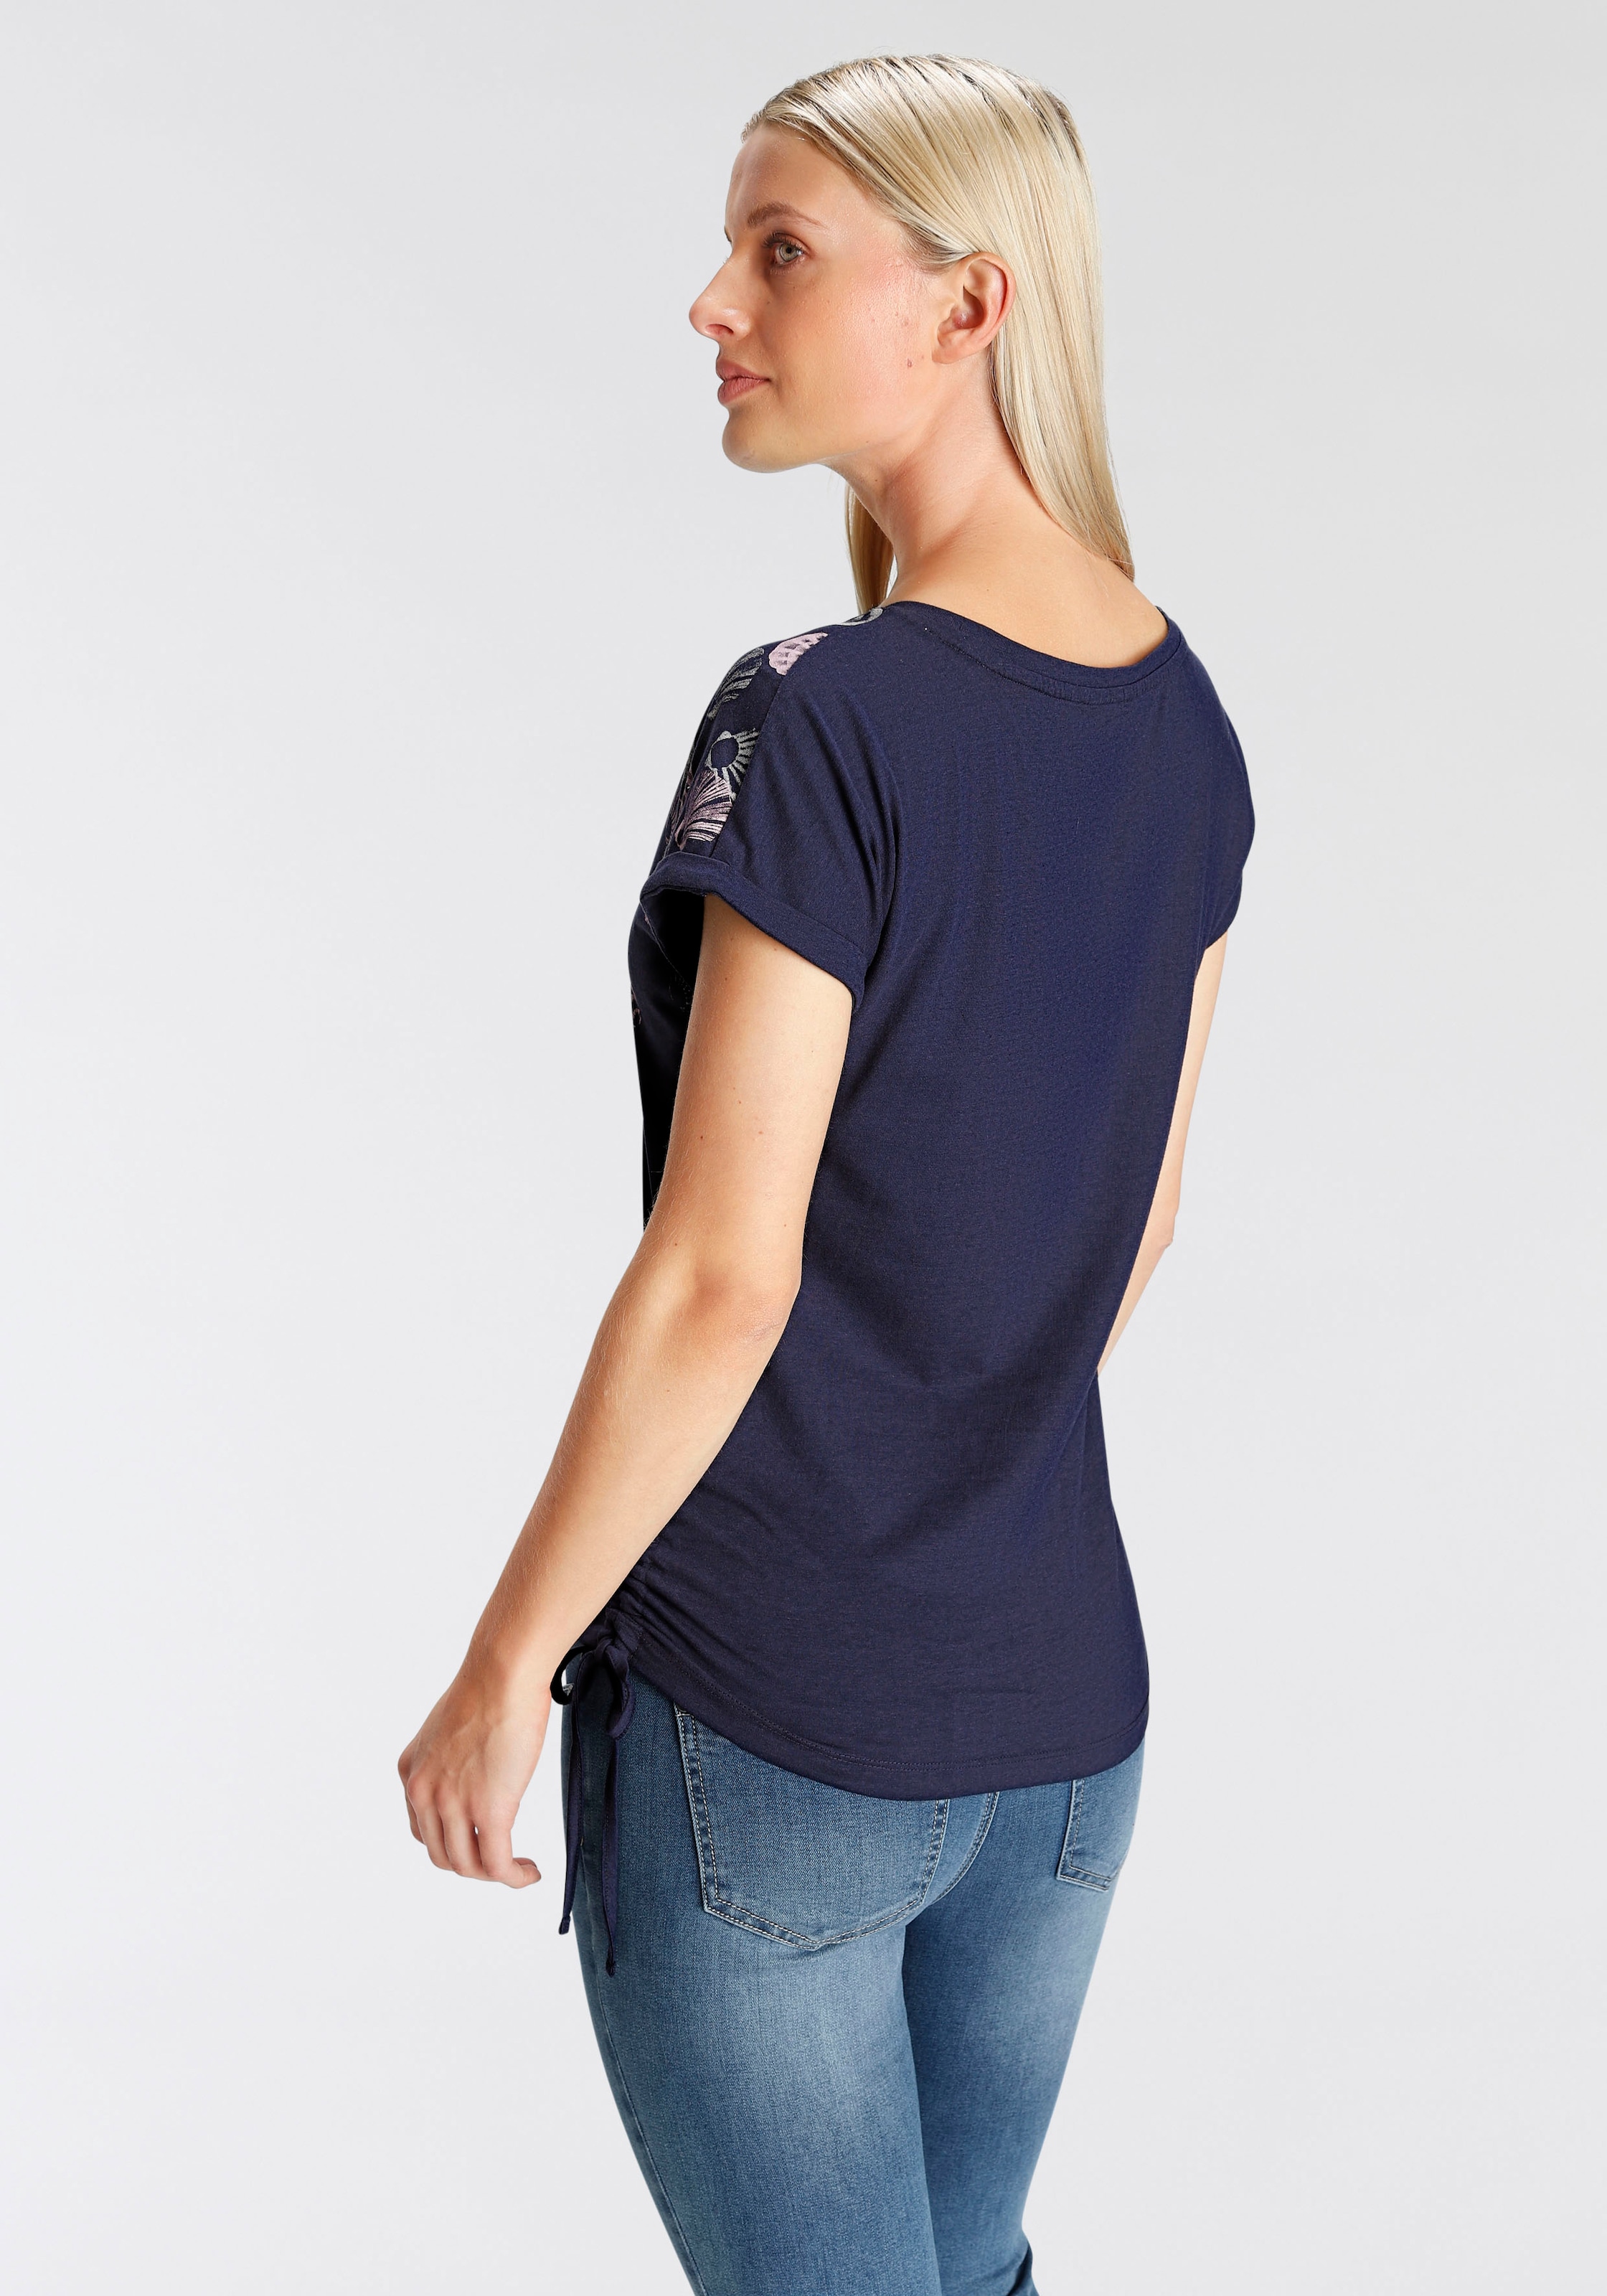 ♕ DELMAO T-Shirt, MARKE seitlichen mit Raffungen in NEUE auf Druckdesigns - versandkostenfrei verschiedenen